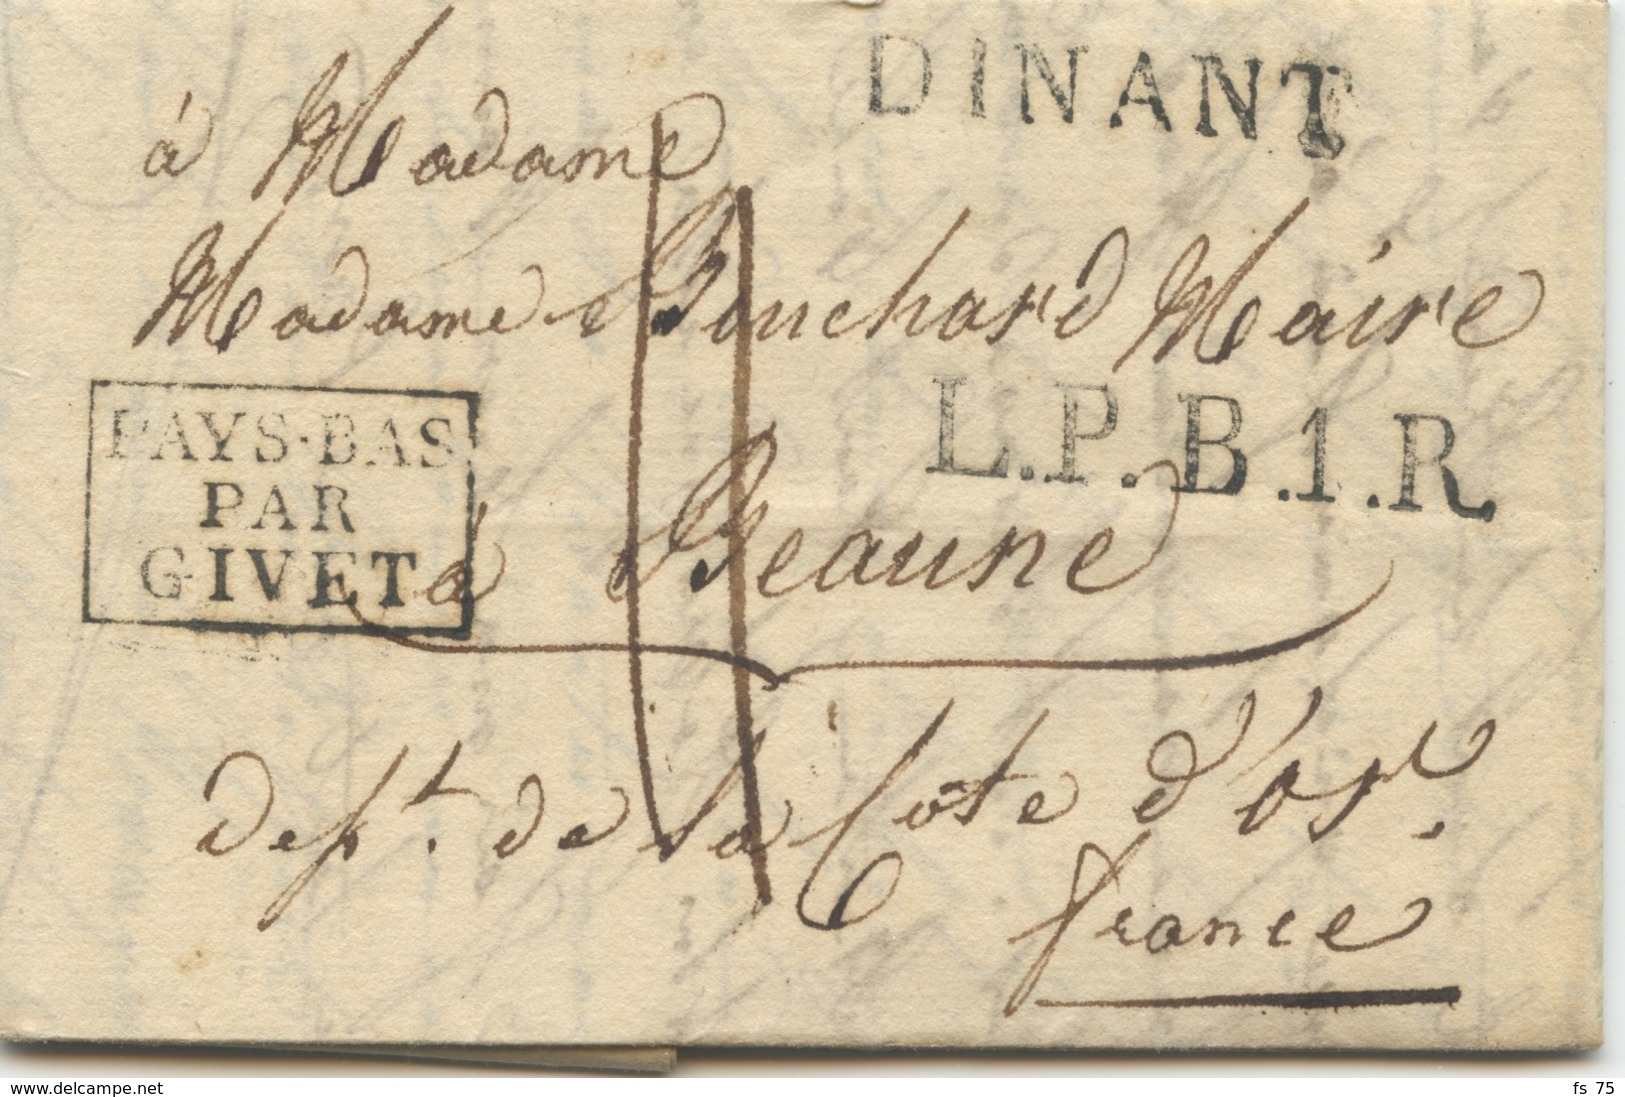 BELGIQUE - DINANT + L.P.B.1.R. + PAYS BAS PAR GIVET SUR LETTRE AVEC TEXTE POUR LA FRANCE, 1818 - 1815-1830 (Dutch Period)